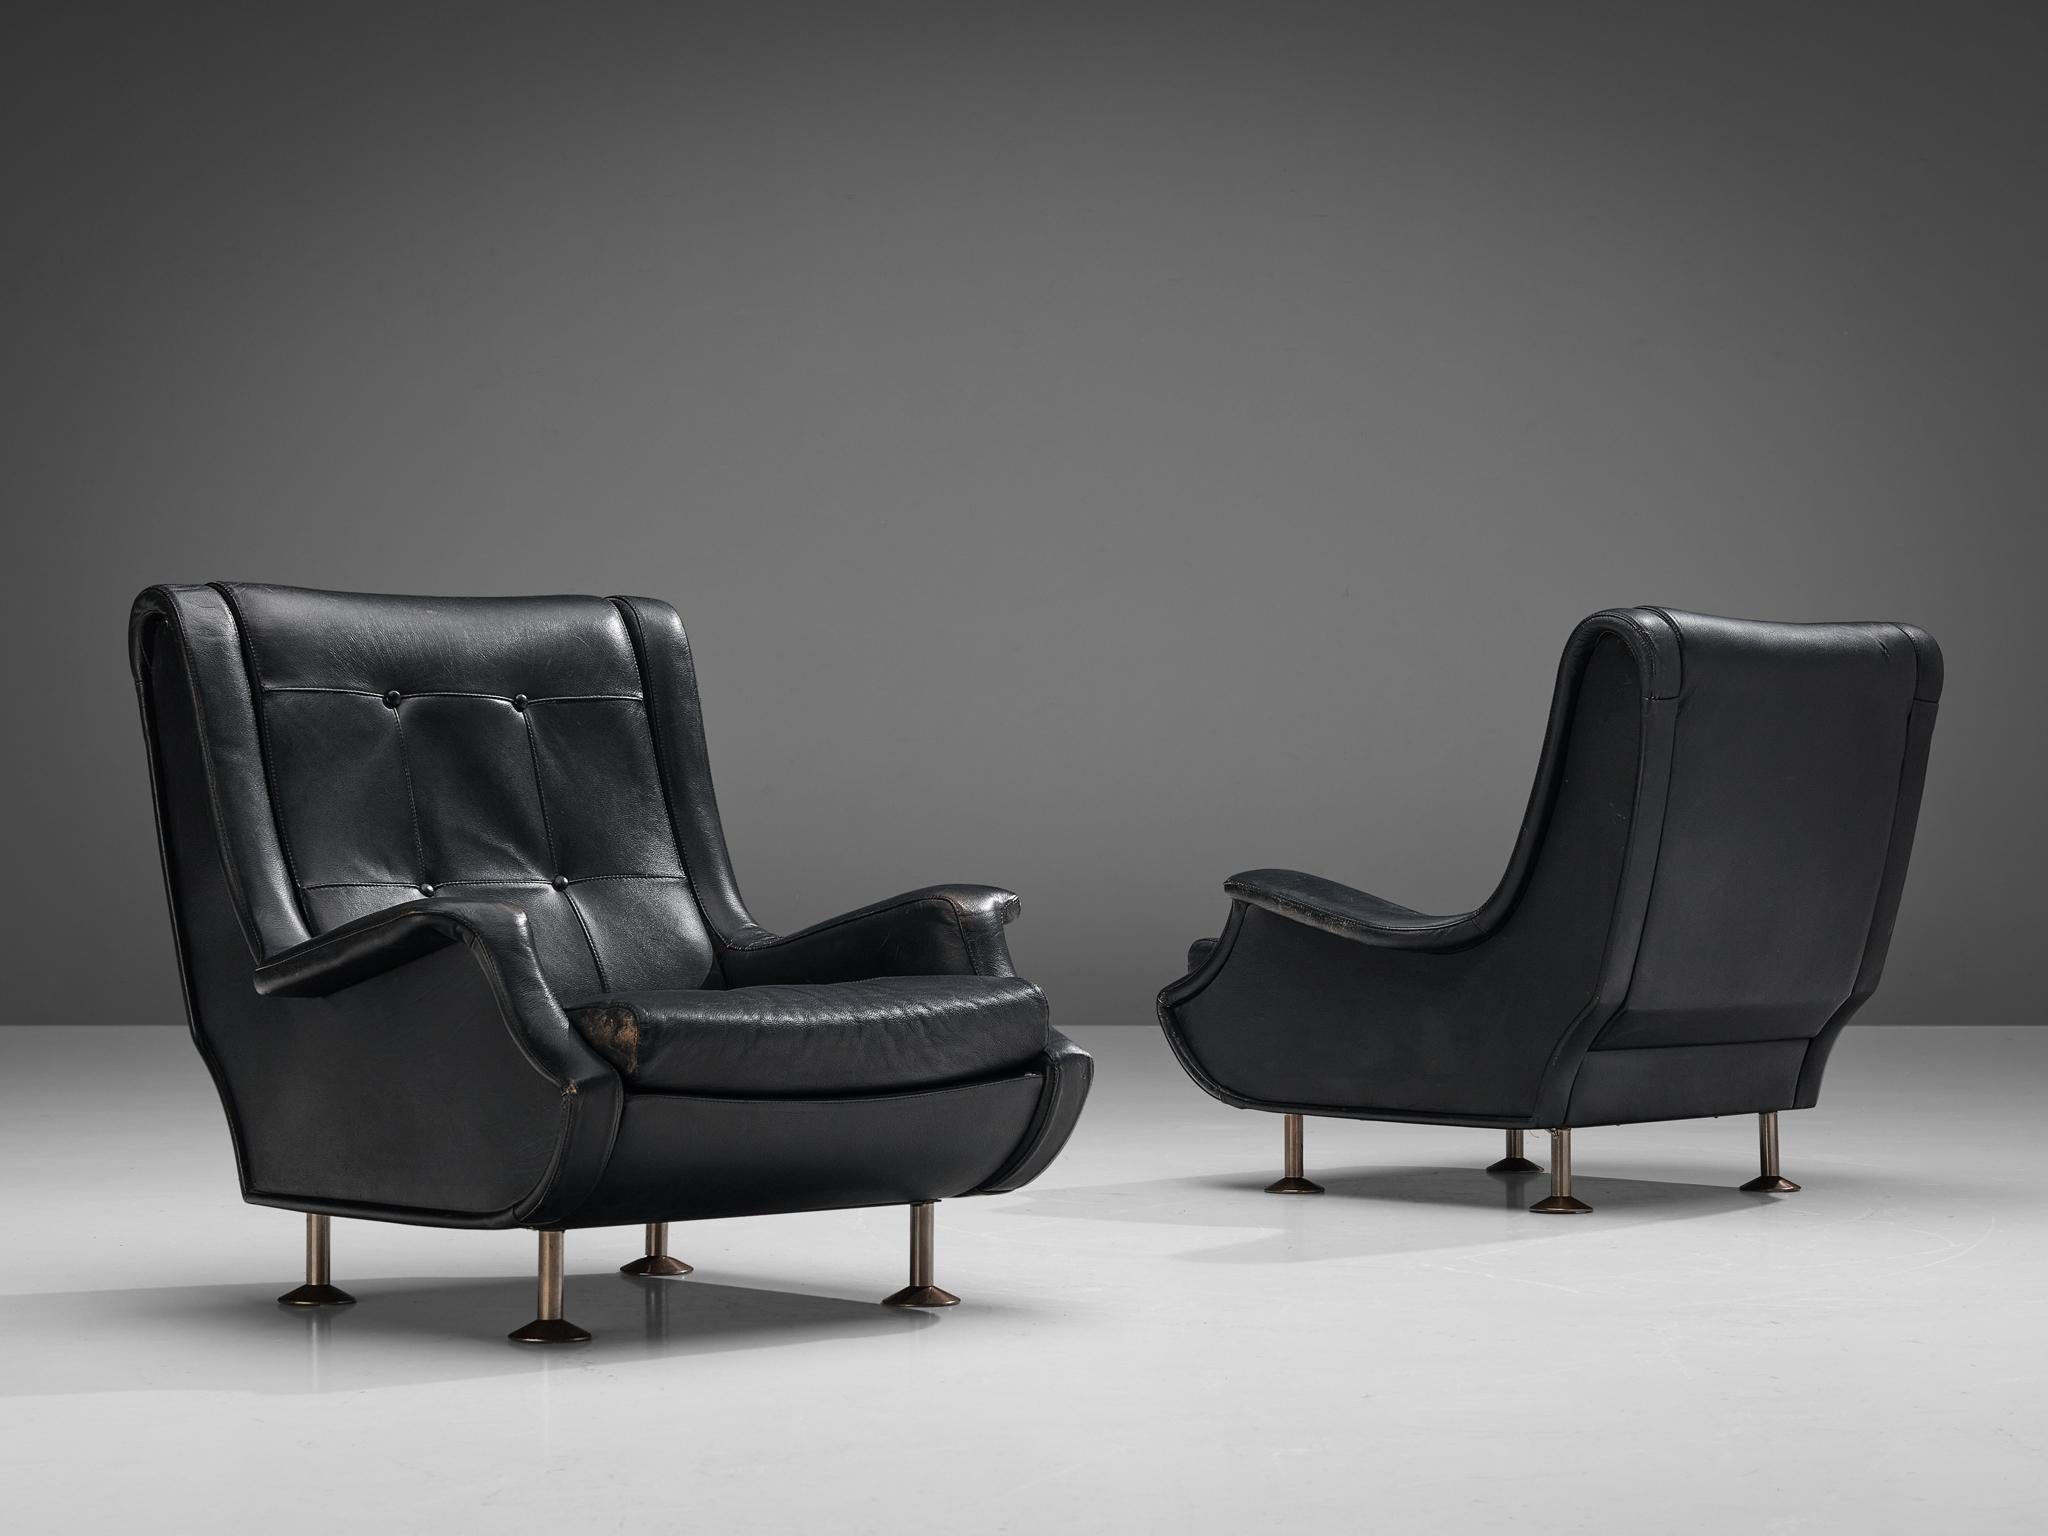 Marco Zanuso pour Arflex, paire de chaises longues, modèle 'Regent', cuir, métal, Italie, créé en 1960

Cette admirable chaise longue baptisée 